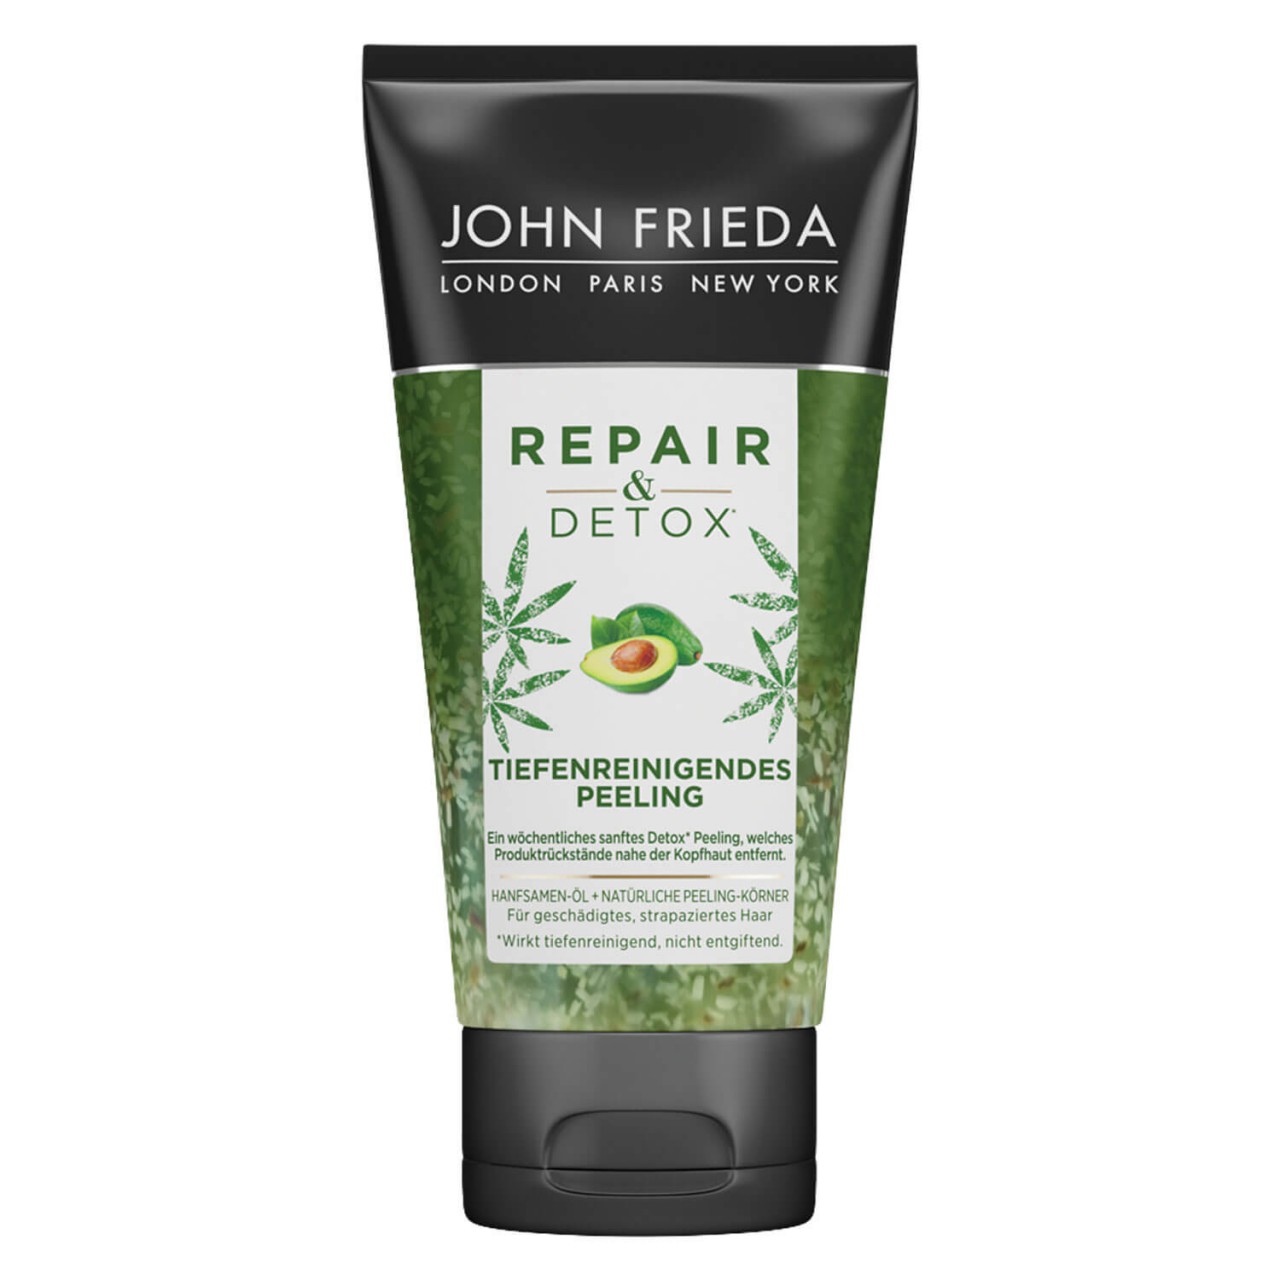 Repair & Detox - Peeling von John Frieda